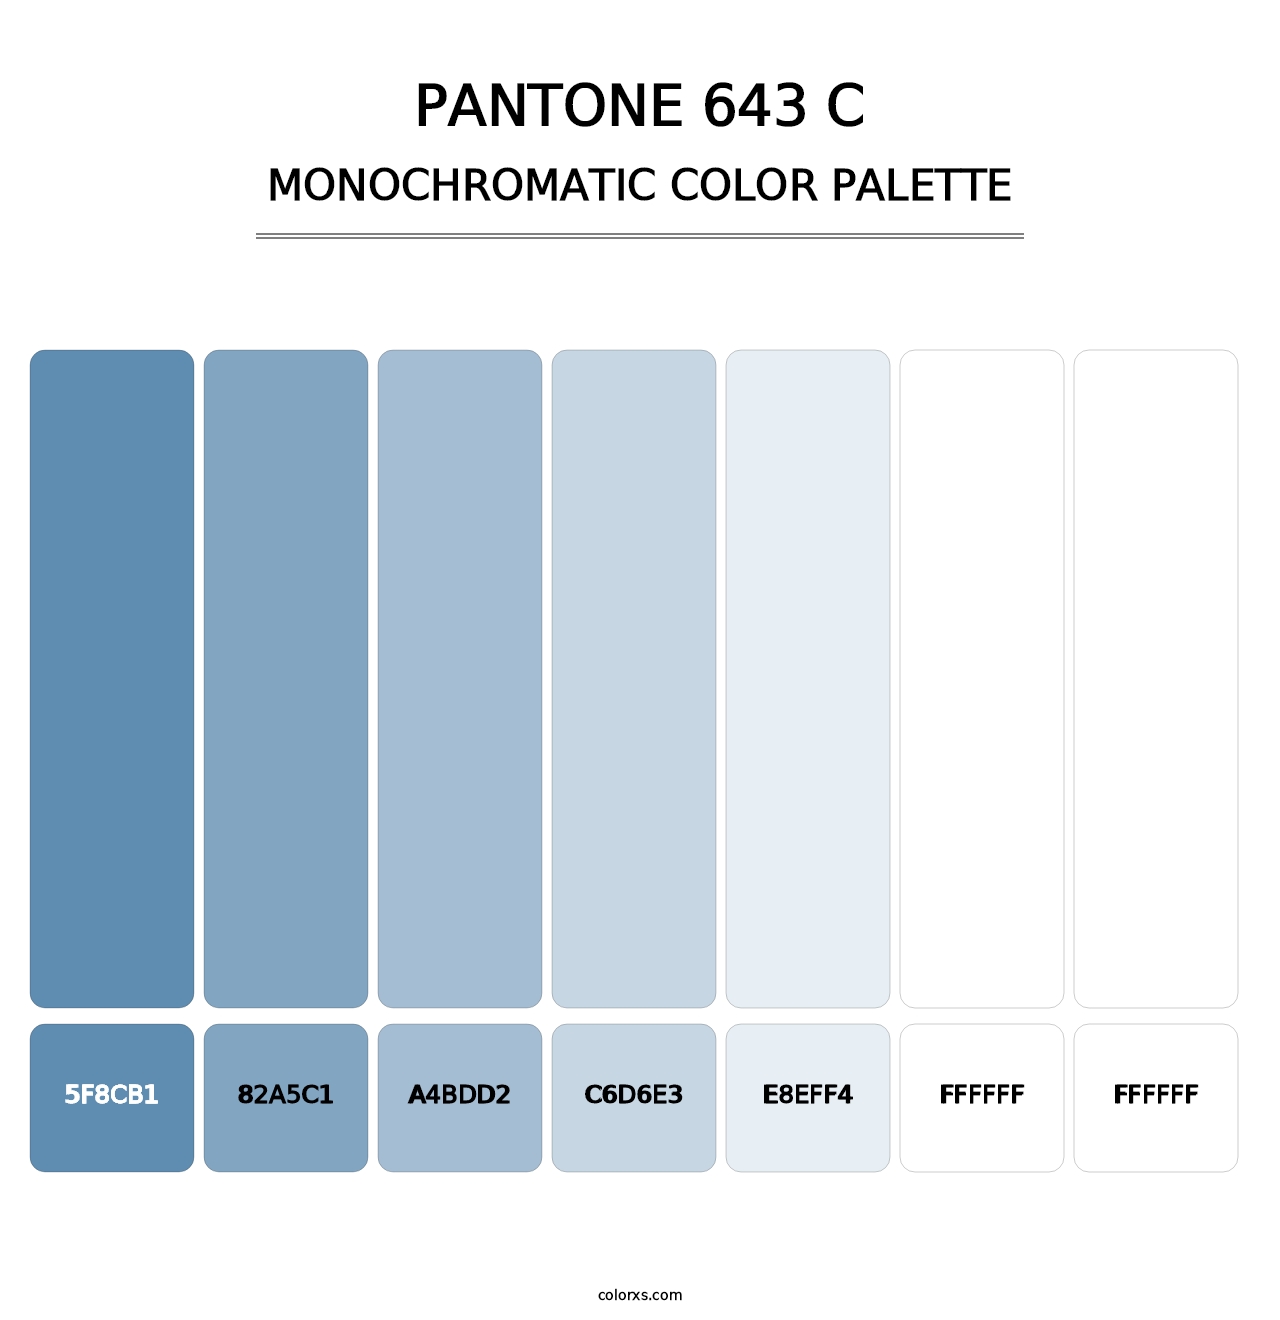 PANTONE 643 C - Monochromatic Color Palette